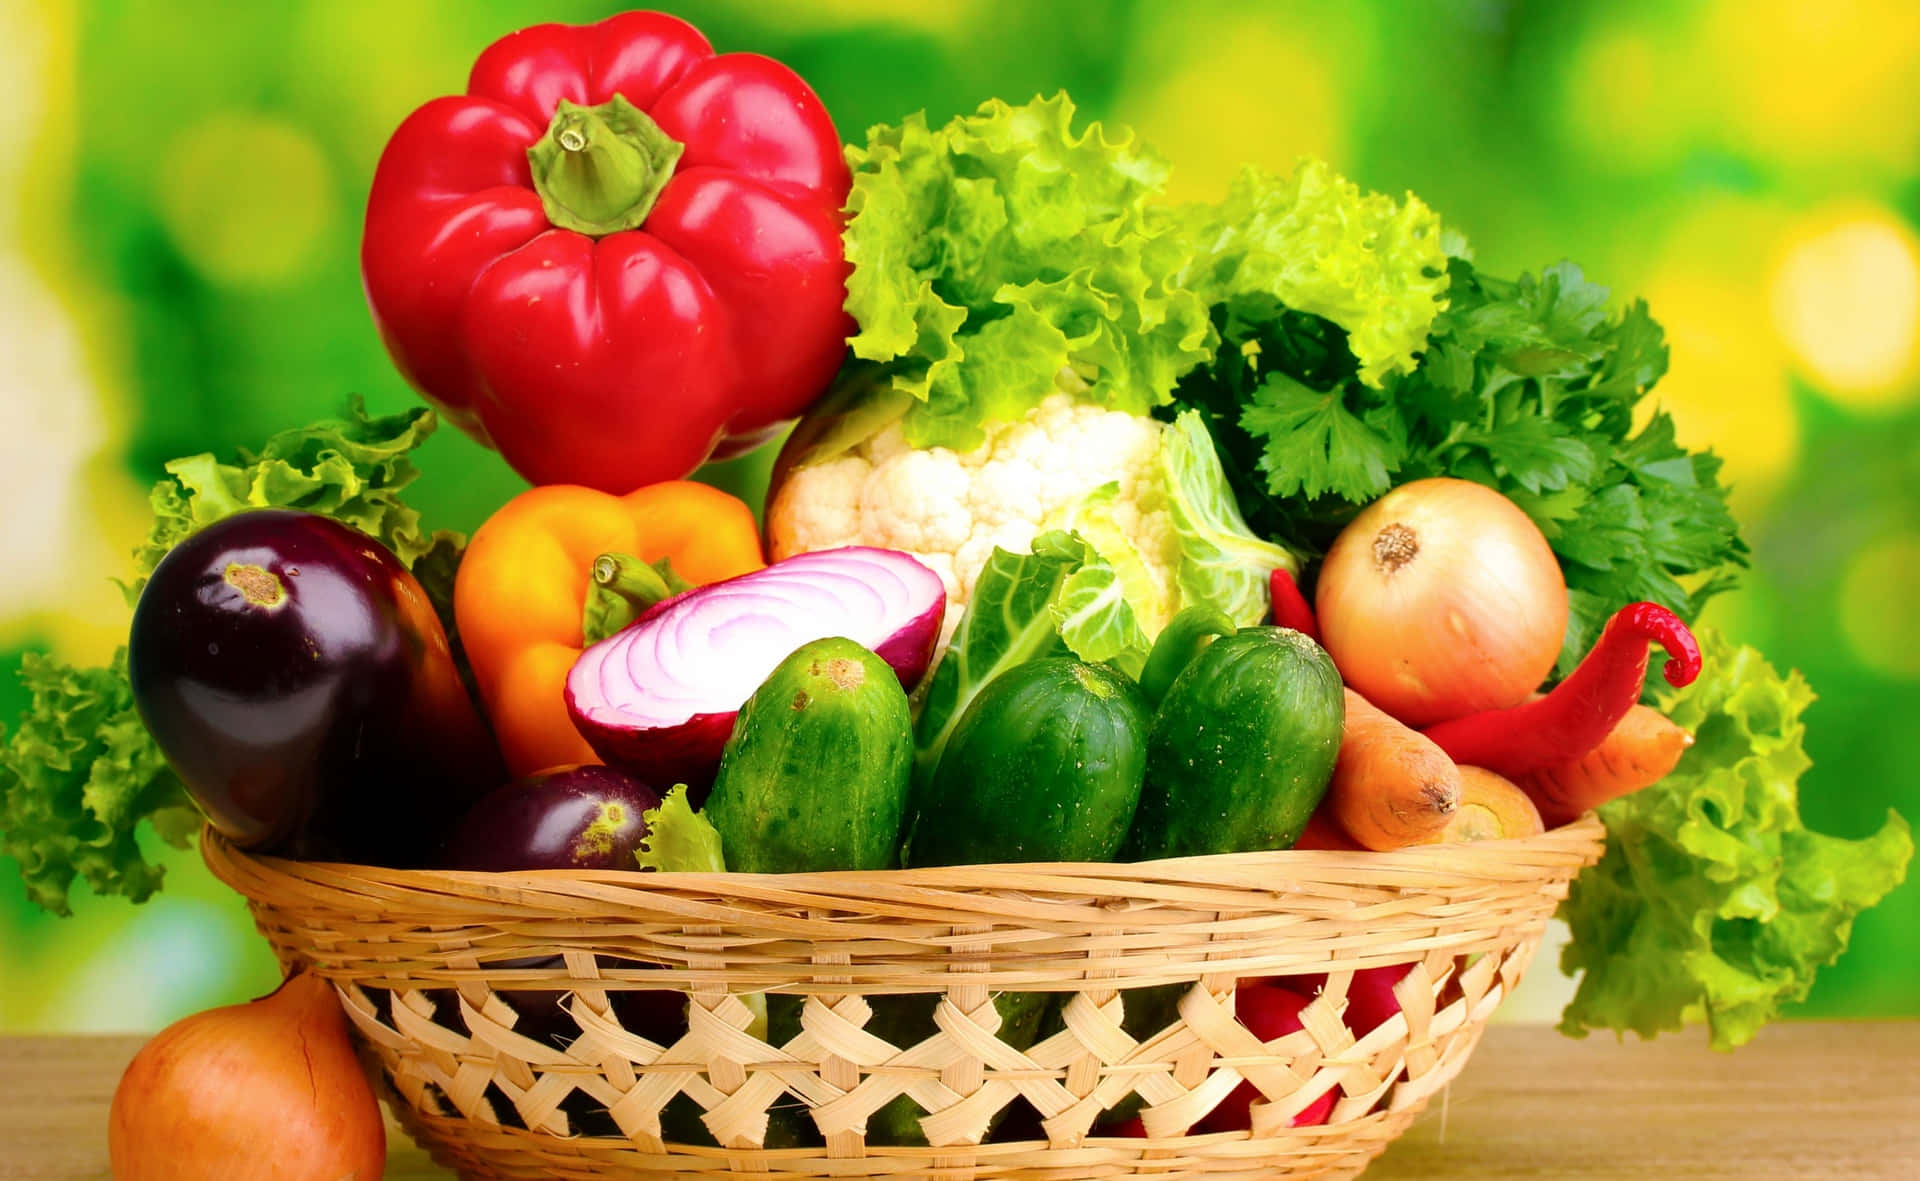 Unavarietà Colorata Di Frutta Fresca E Verdura